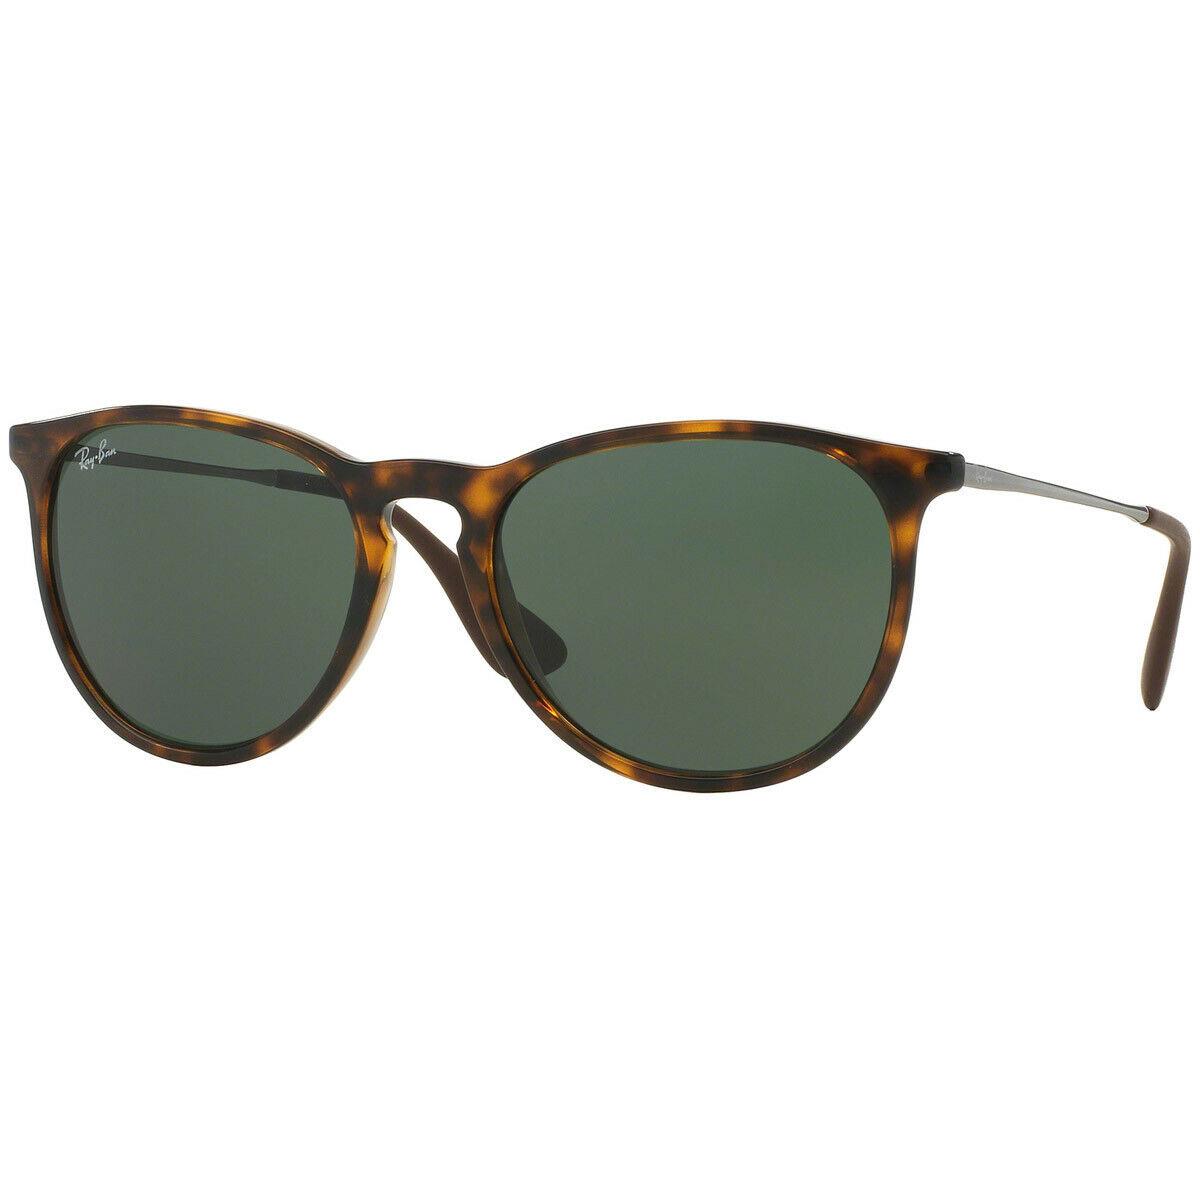 Ray-ban Erika Gloss Tortoise Unisex Sunglasses RB4171 710/71 54 - Frame: Brown, Lens: Green